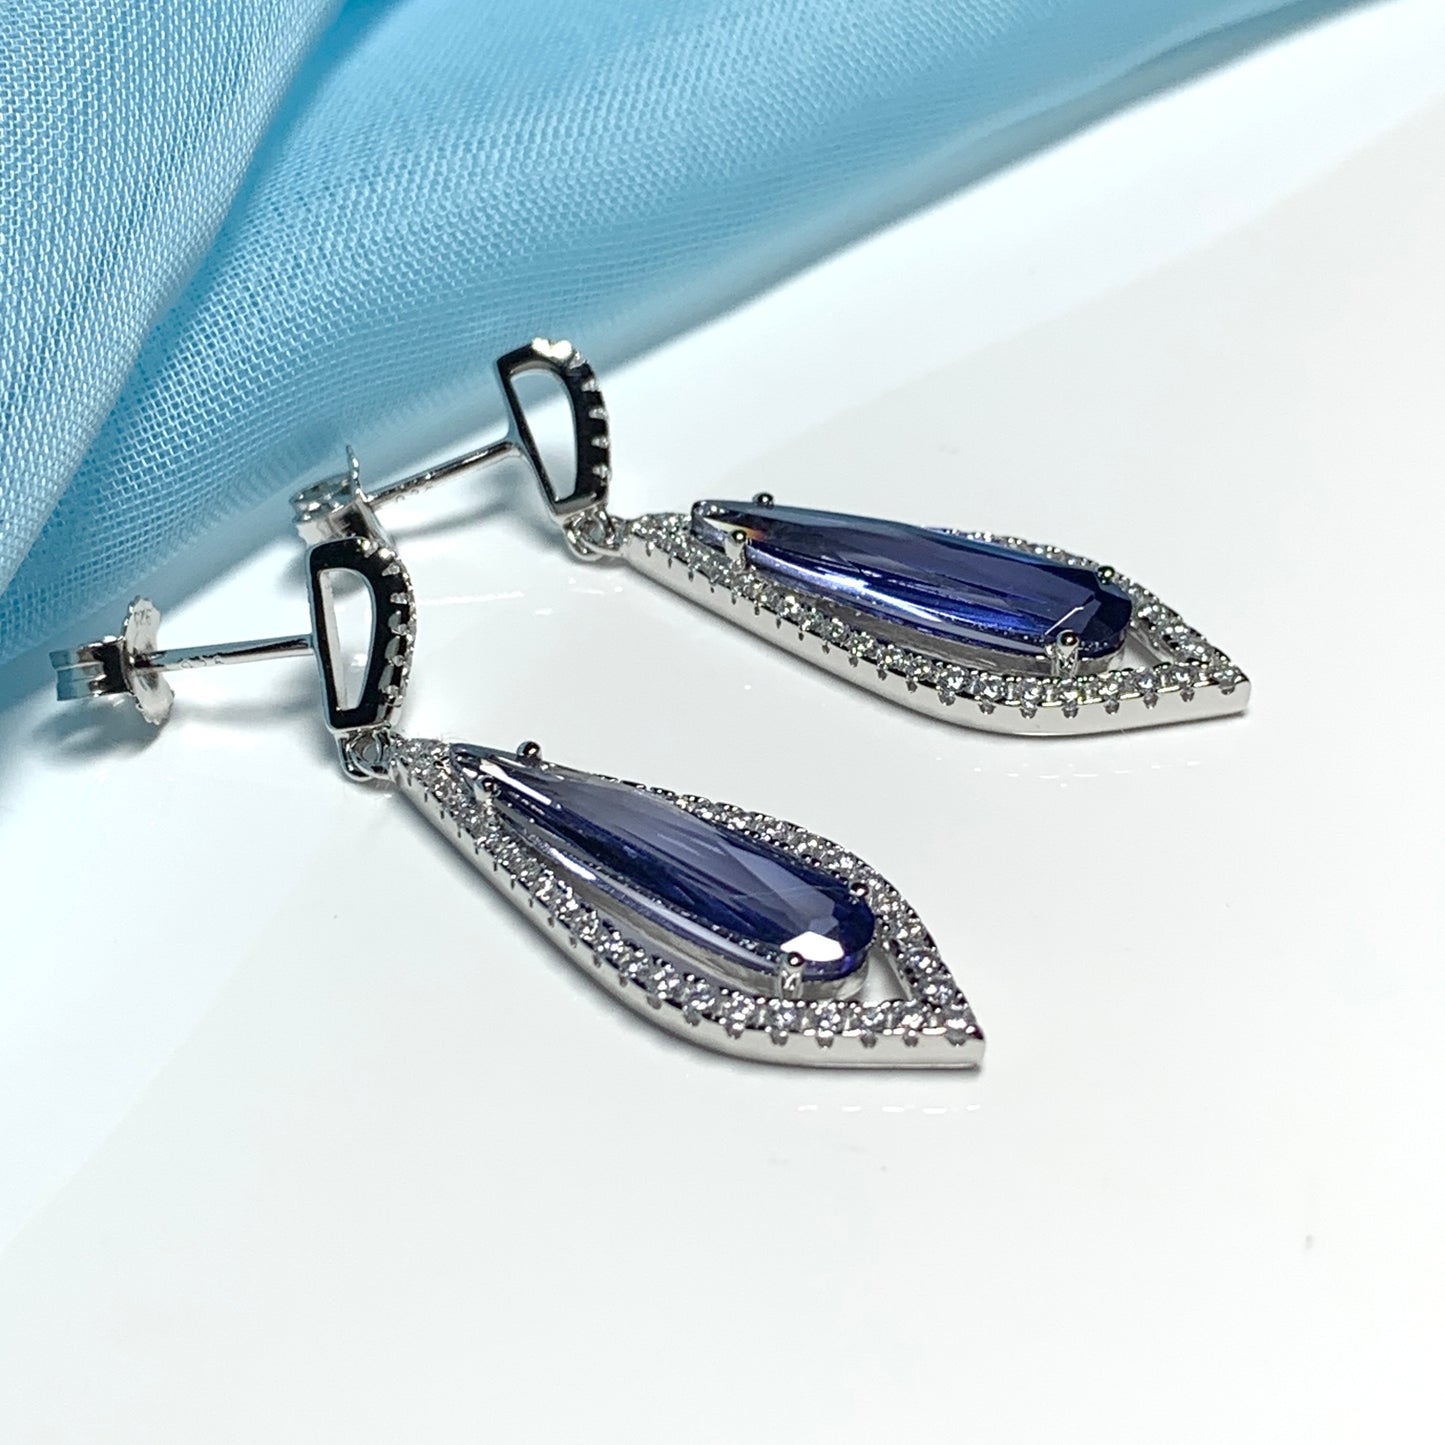 Blue pear shaped cubic zirconia silver cluster long drop earrings